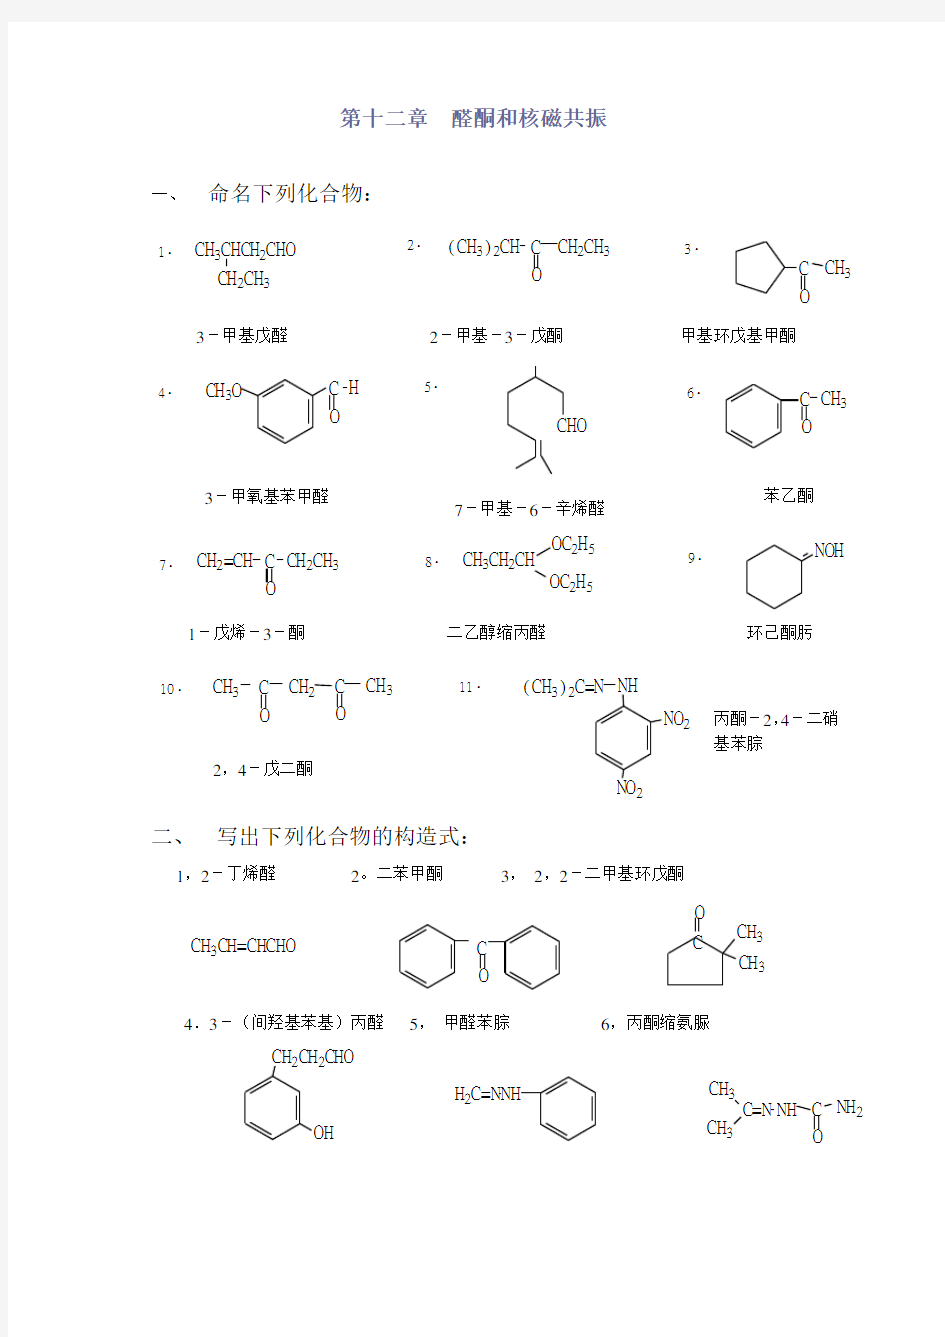 高教第二版(徐寿昌)有机化学课后习题答案第12章